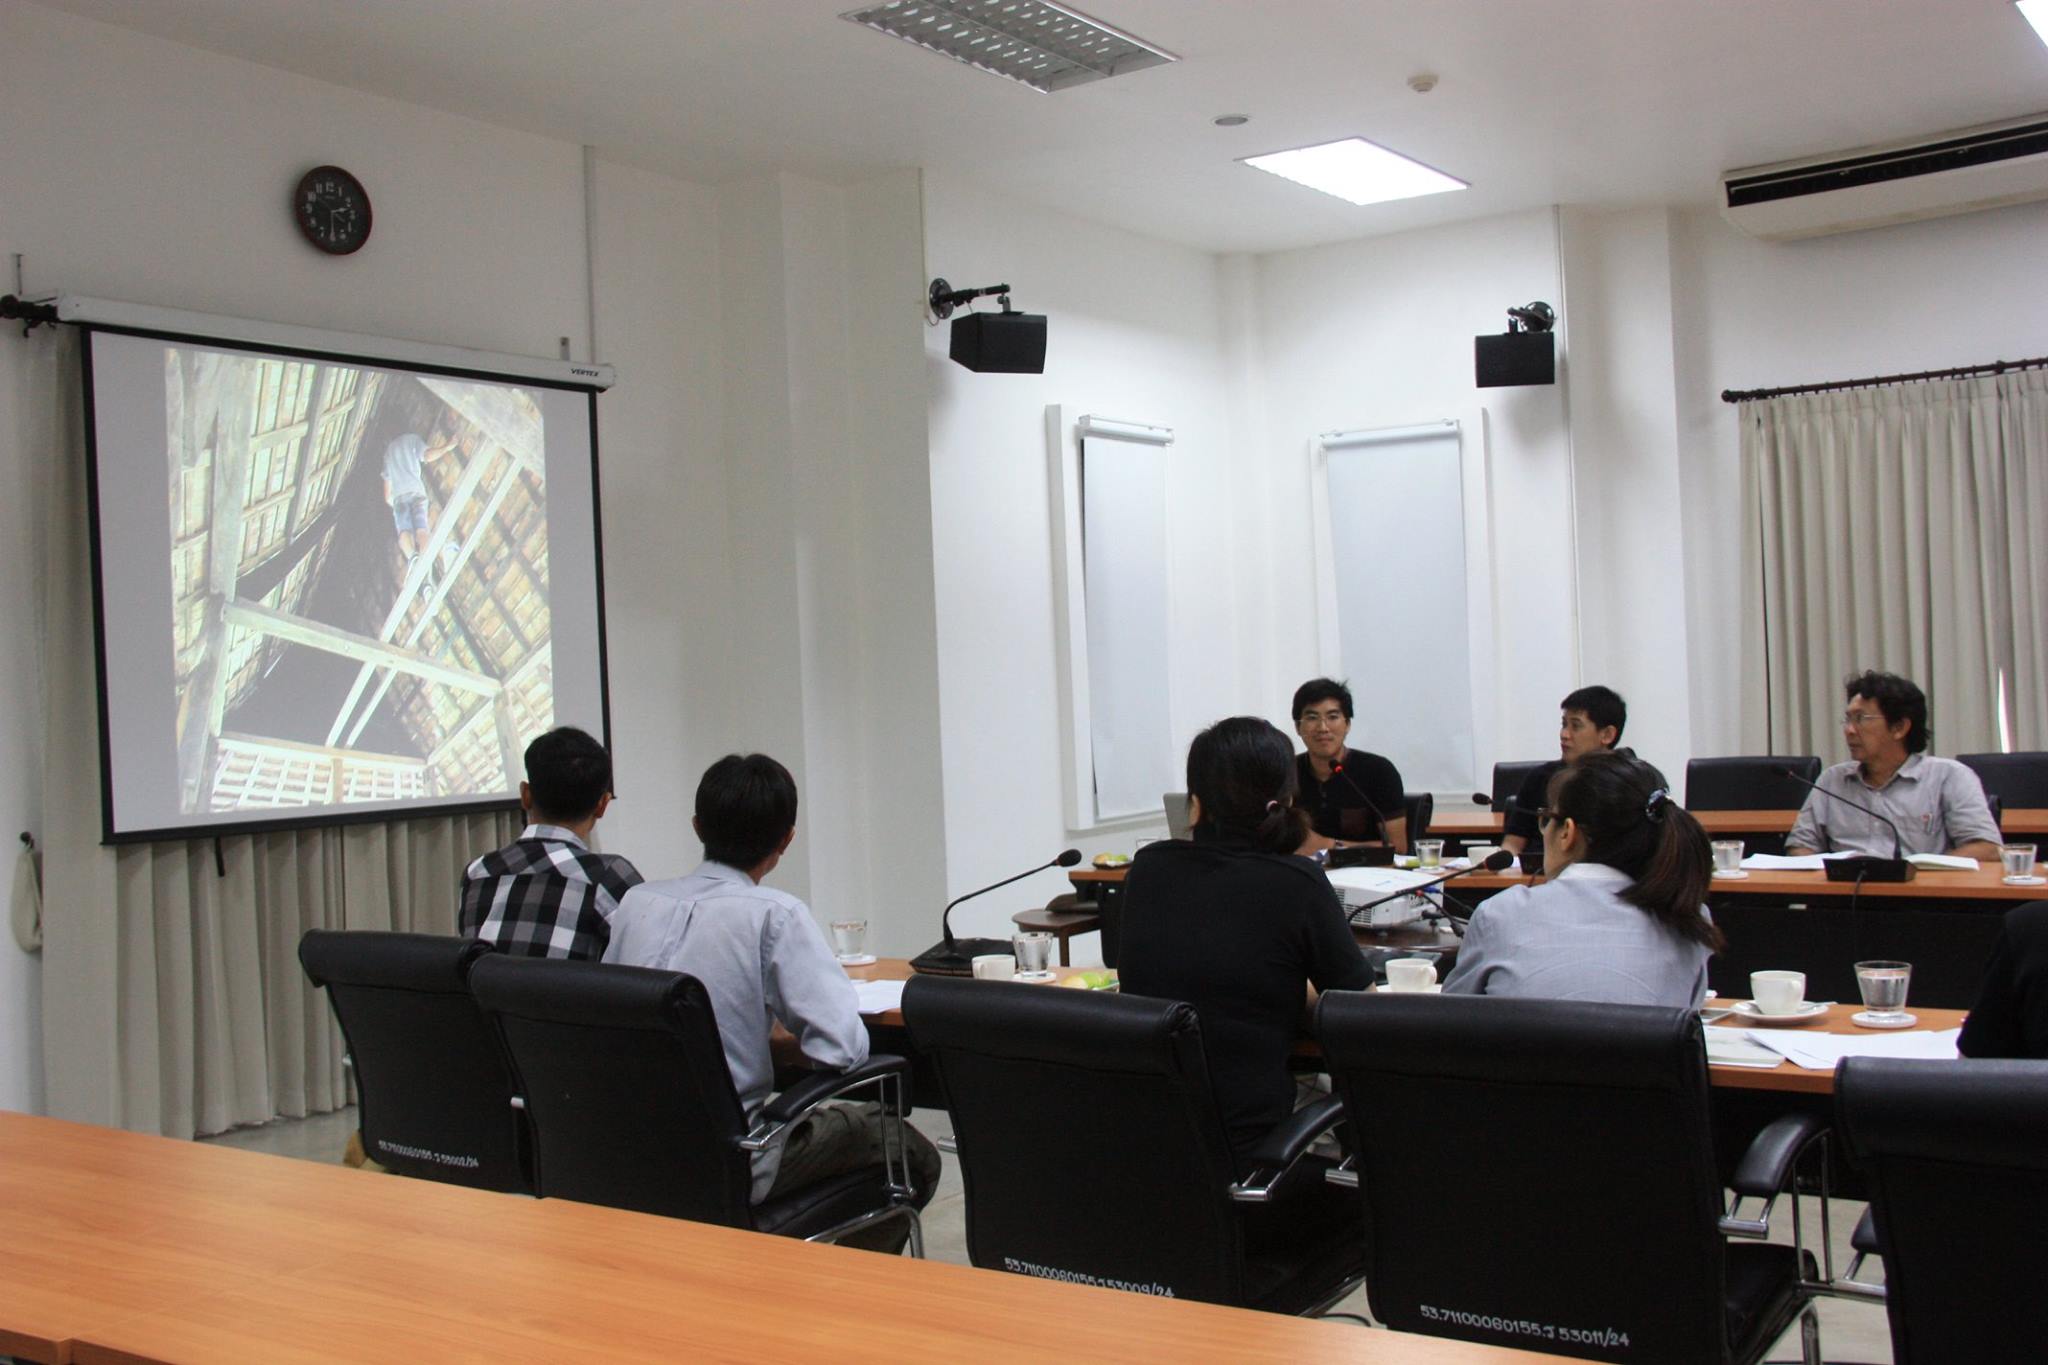 การประชุมคณะกรรมการตรวจรับพัสดุในโครงการอนุรักษ์หลองข้าวป่าซาง จังหวัดลำพูน ครั้งที่ 3/2560 เมื่อวันที่ 13 มิถุนายน 2560